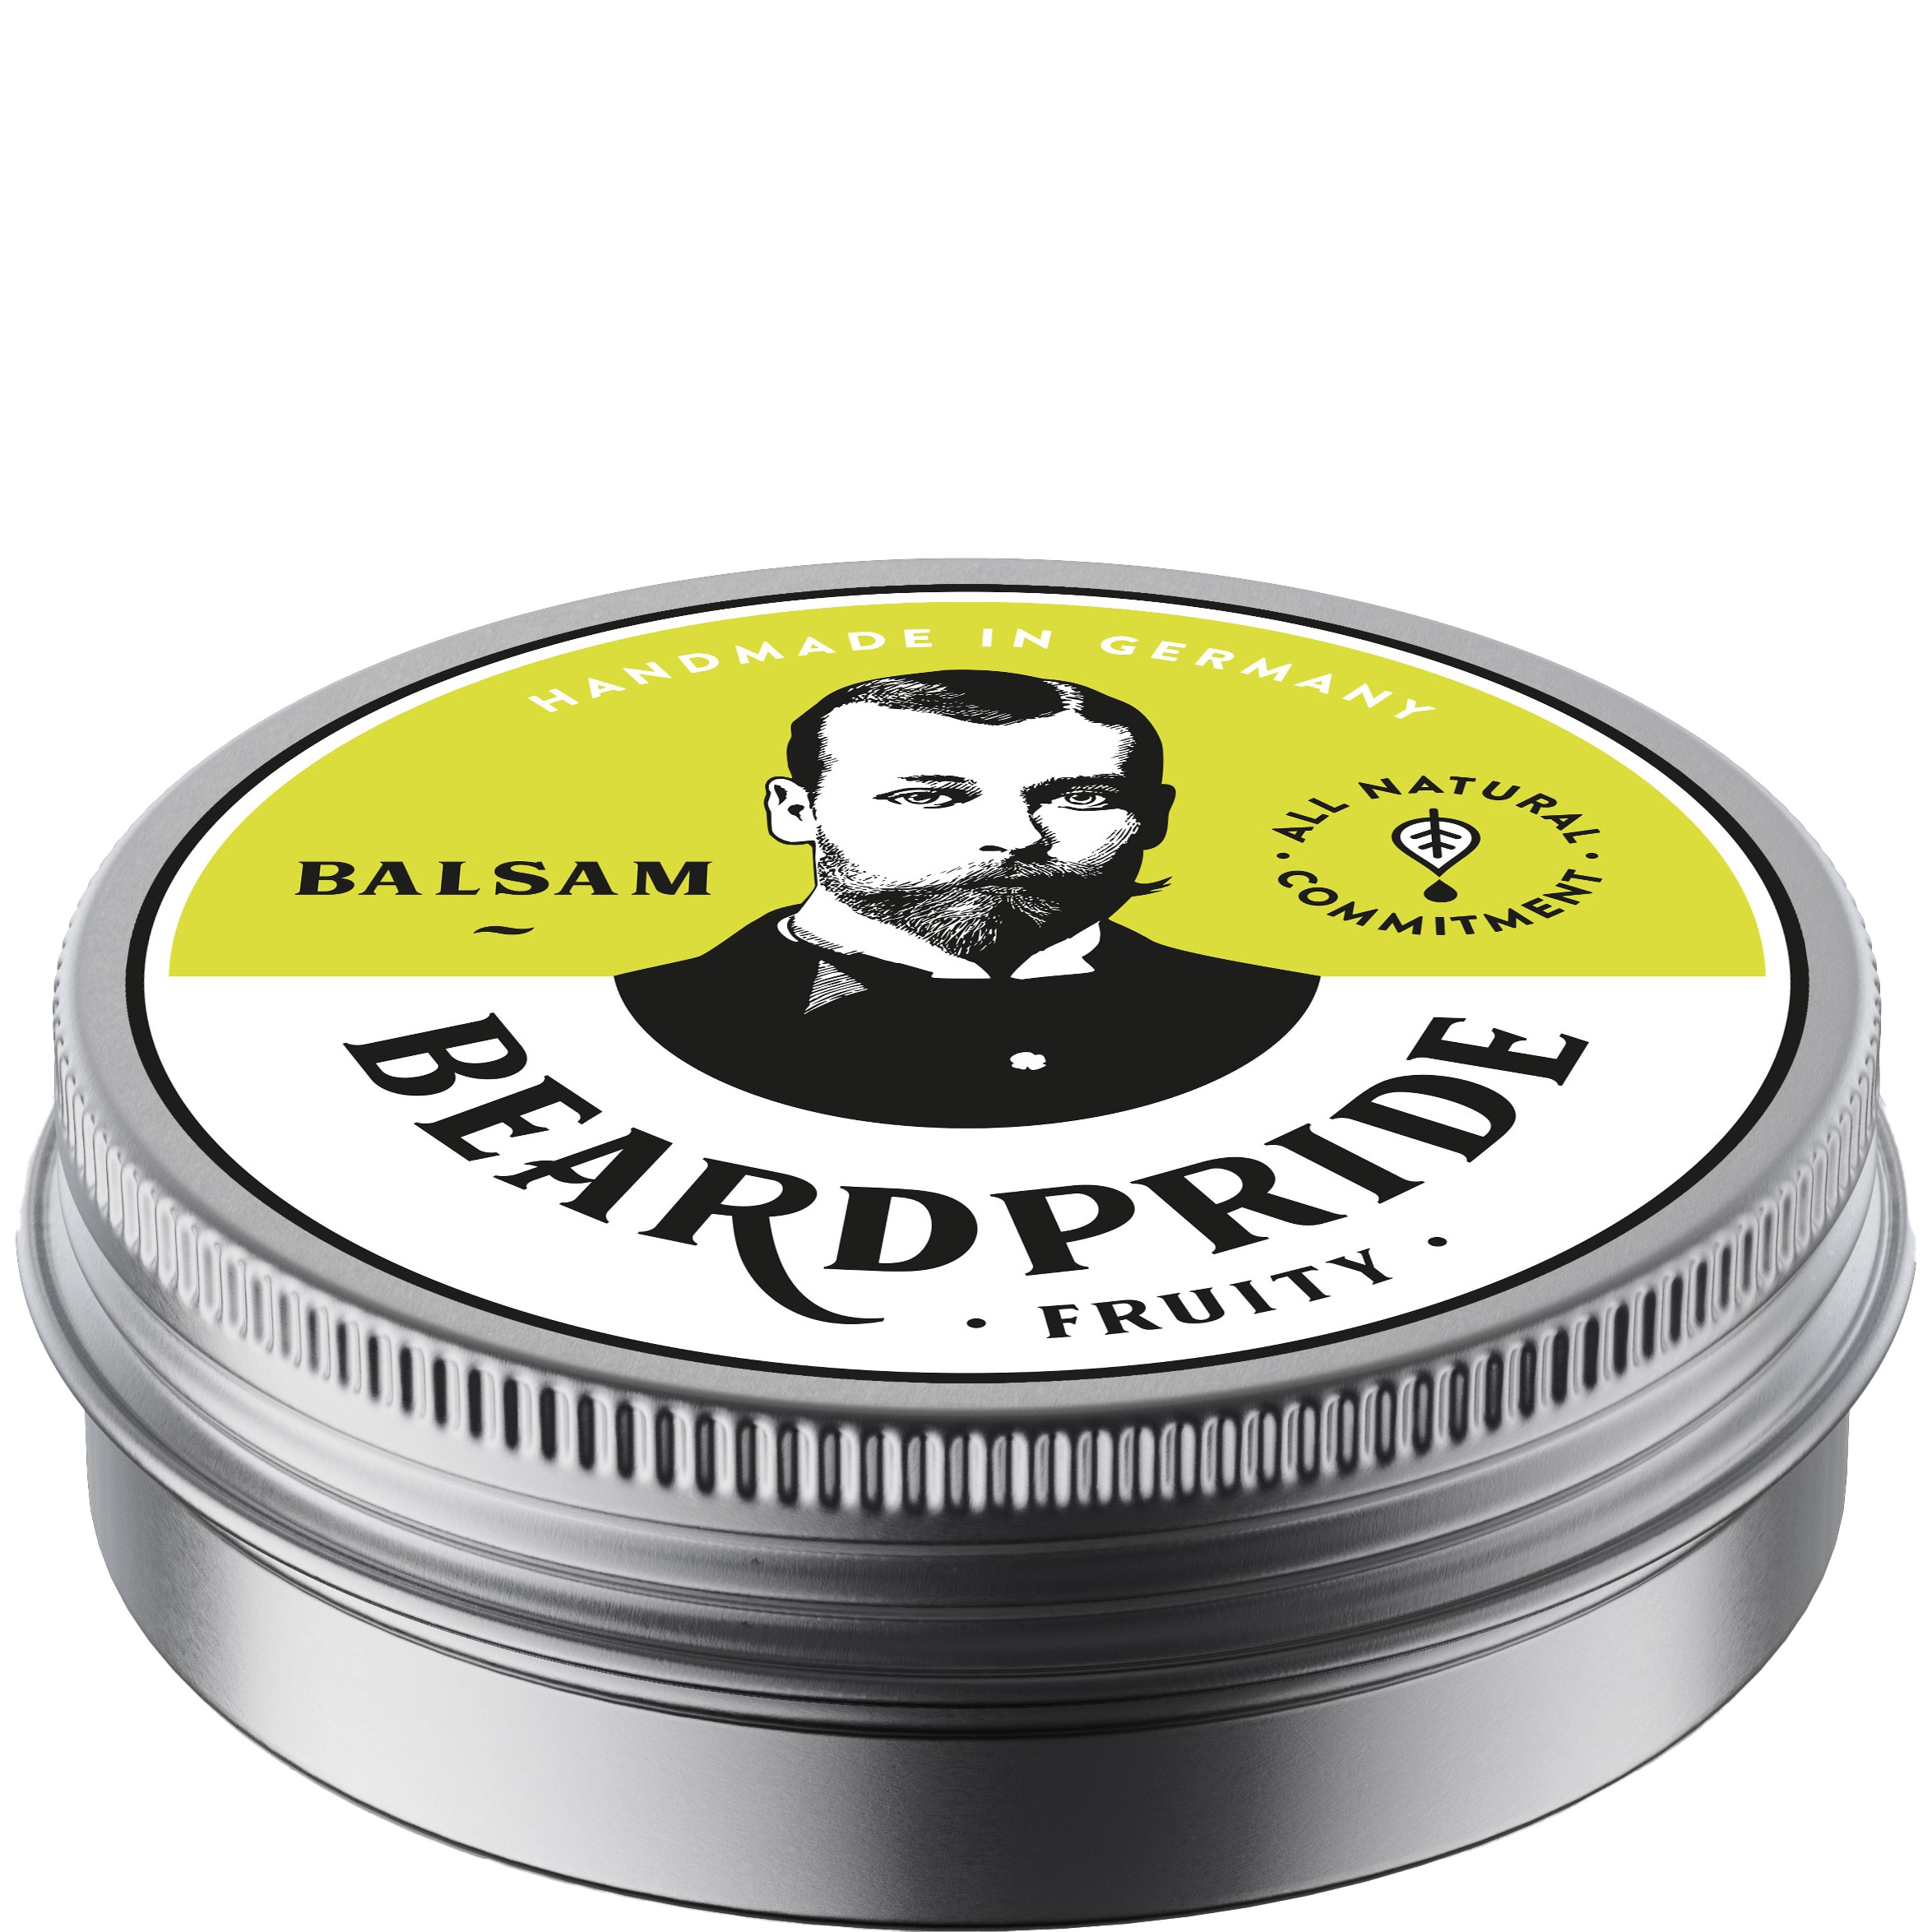 Beardpride Blsam Fruity 55 gram - 1.1 - BP-310355